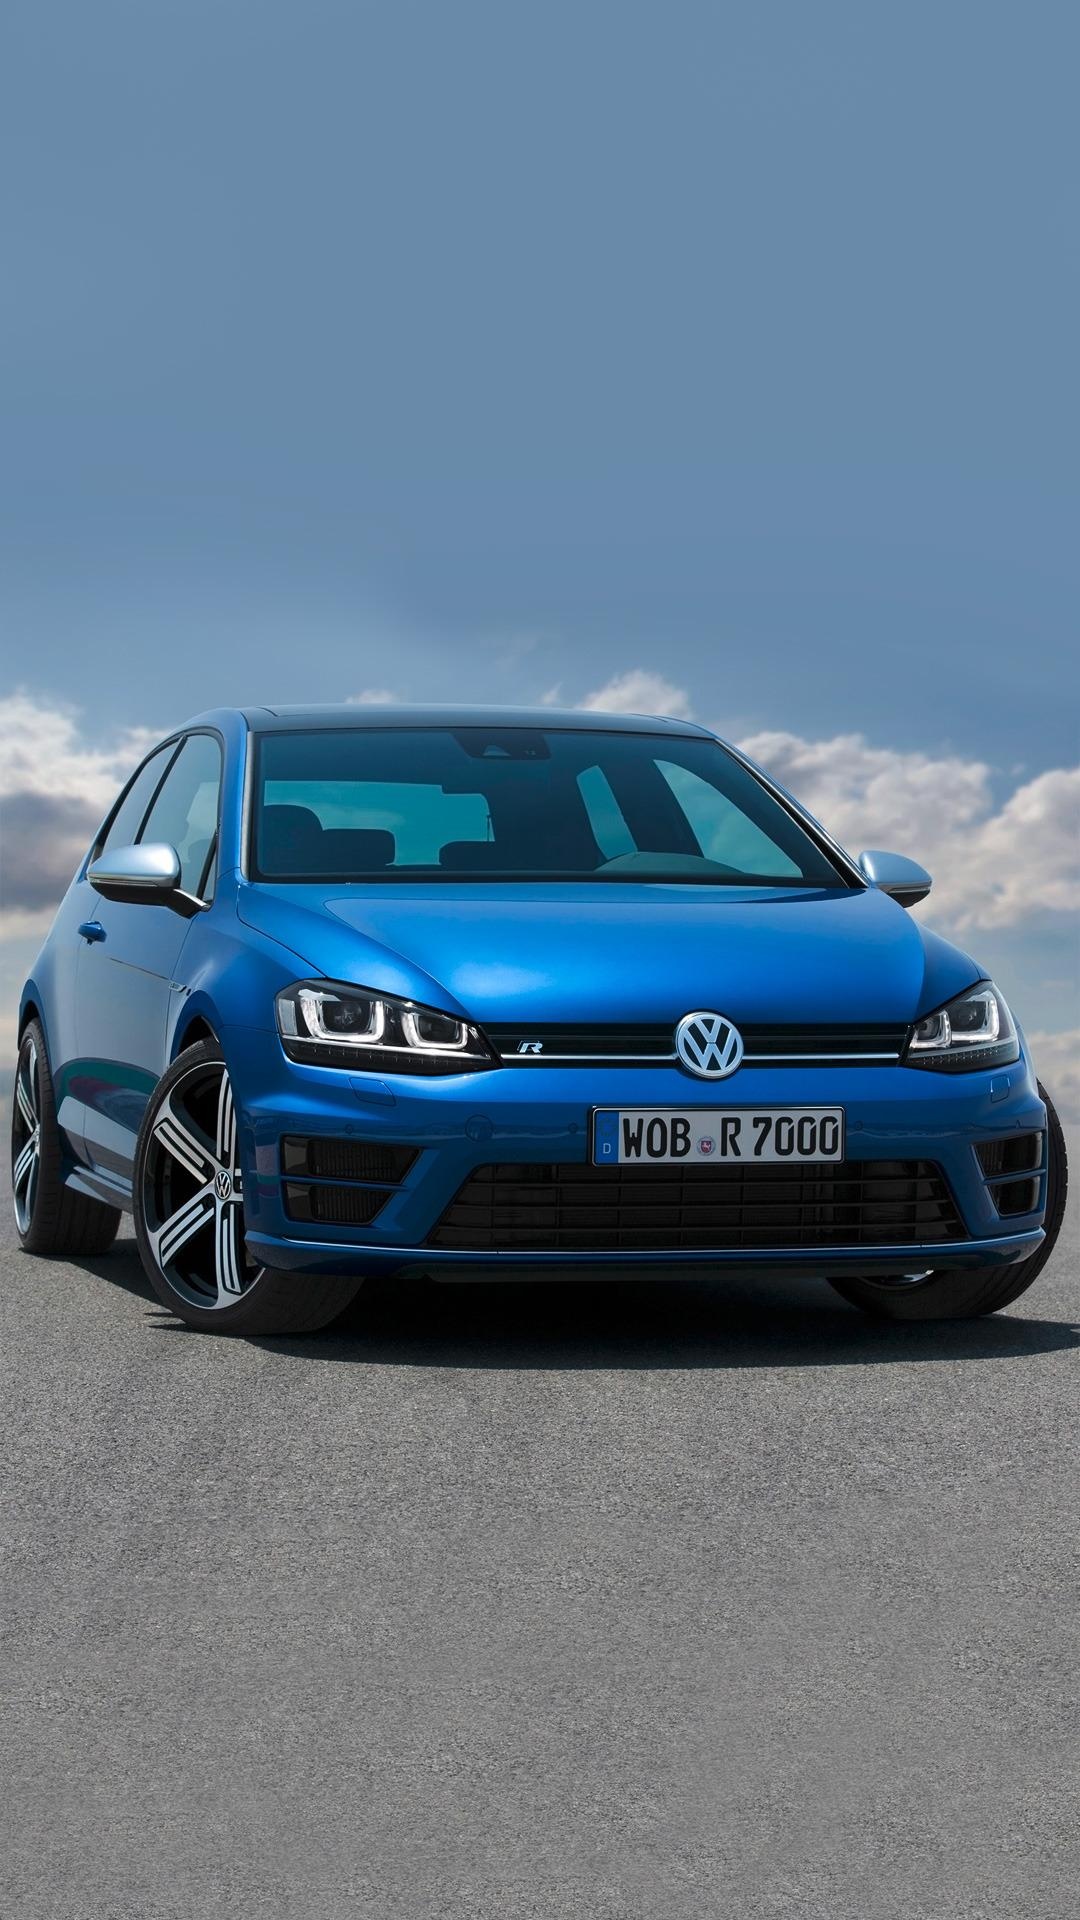 Volkswagen Golf, Volkswagen phone wallpapers, Free backgrounds, Volkswagen, 1080x1920 Full HD Phone